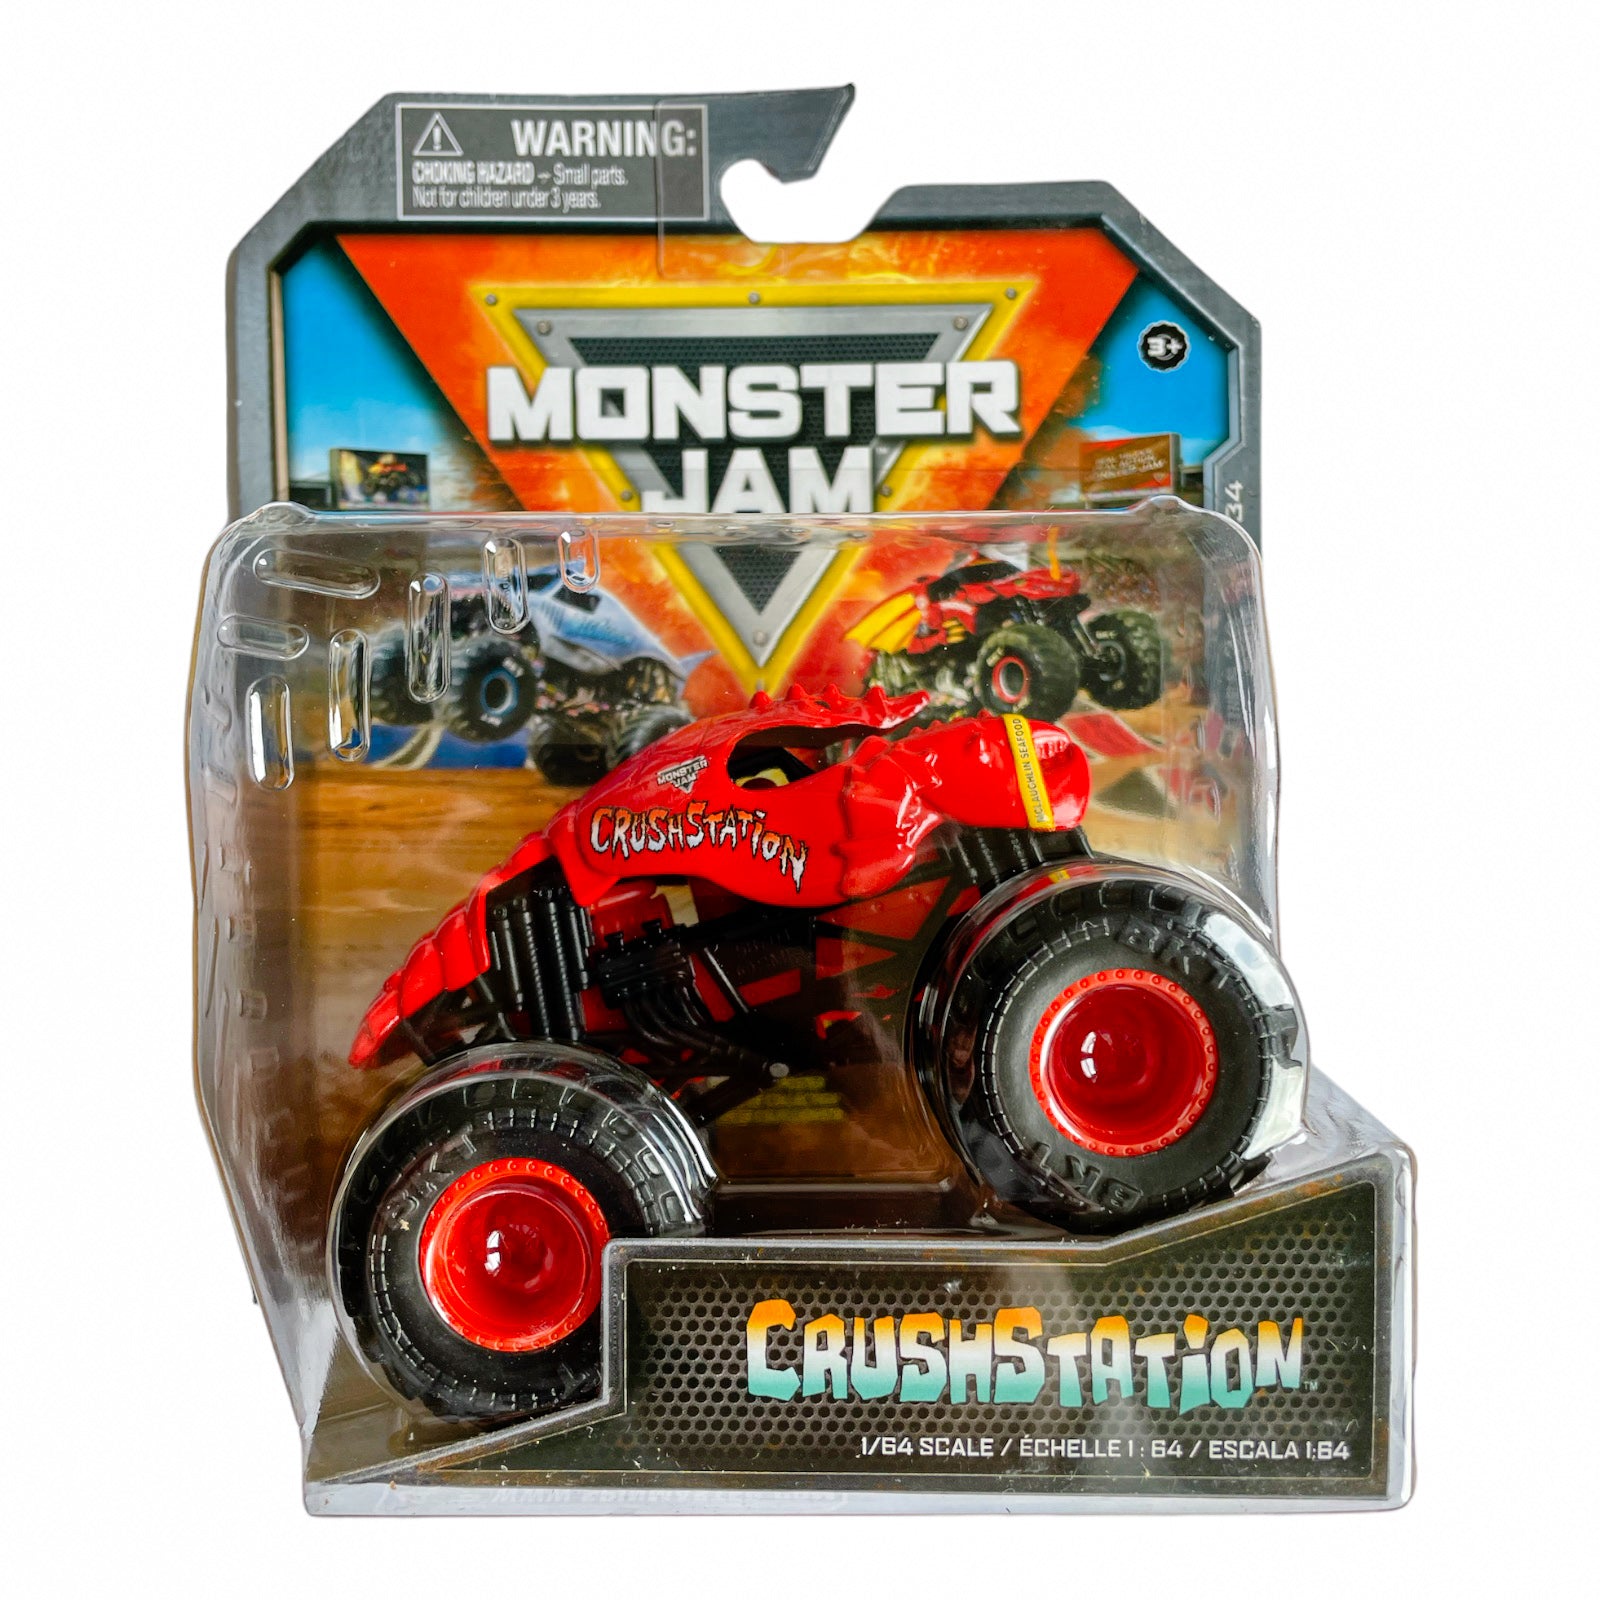 Monster Jam Die-Cast Vehicle 1:64 Scale Crushstation Monster Jam